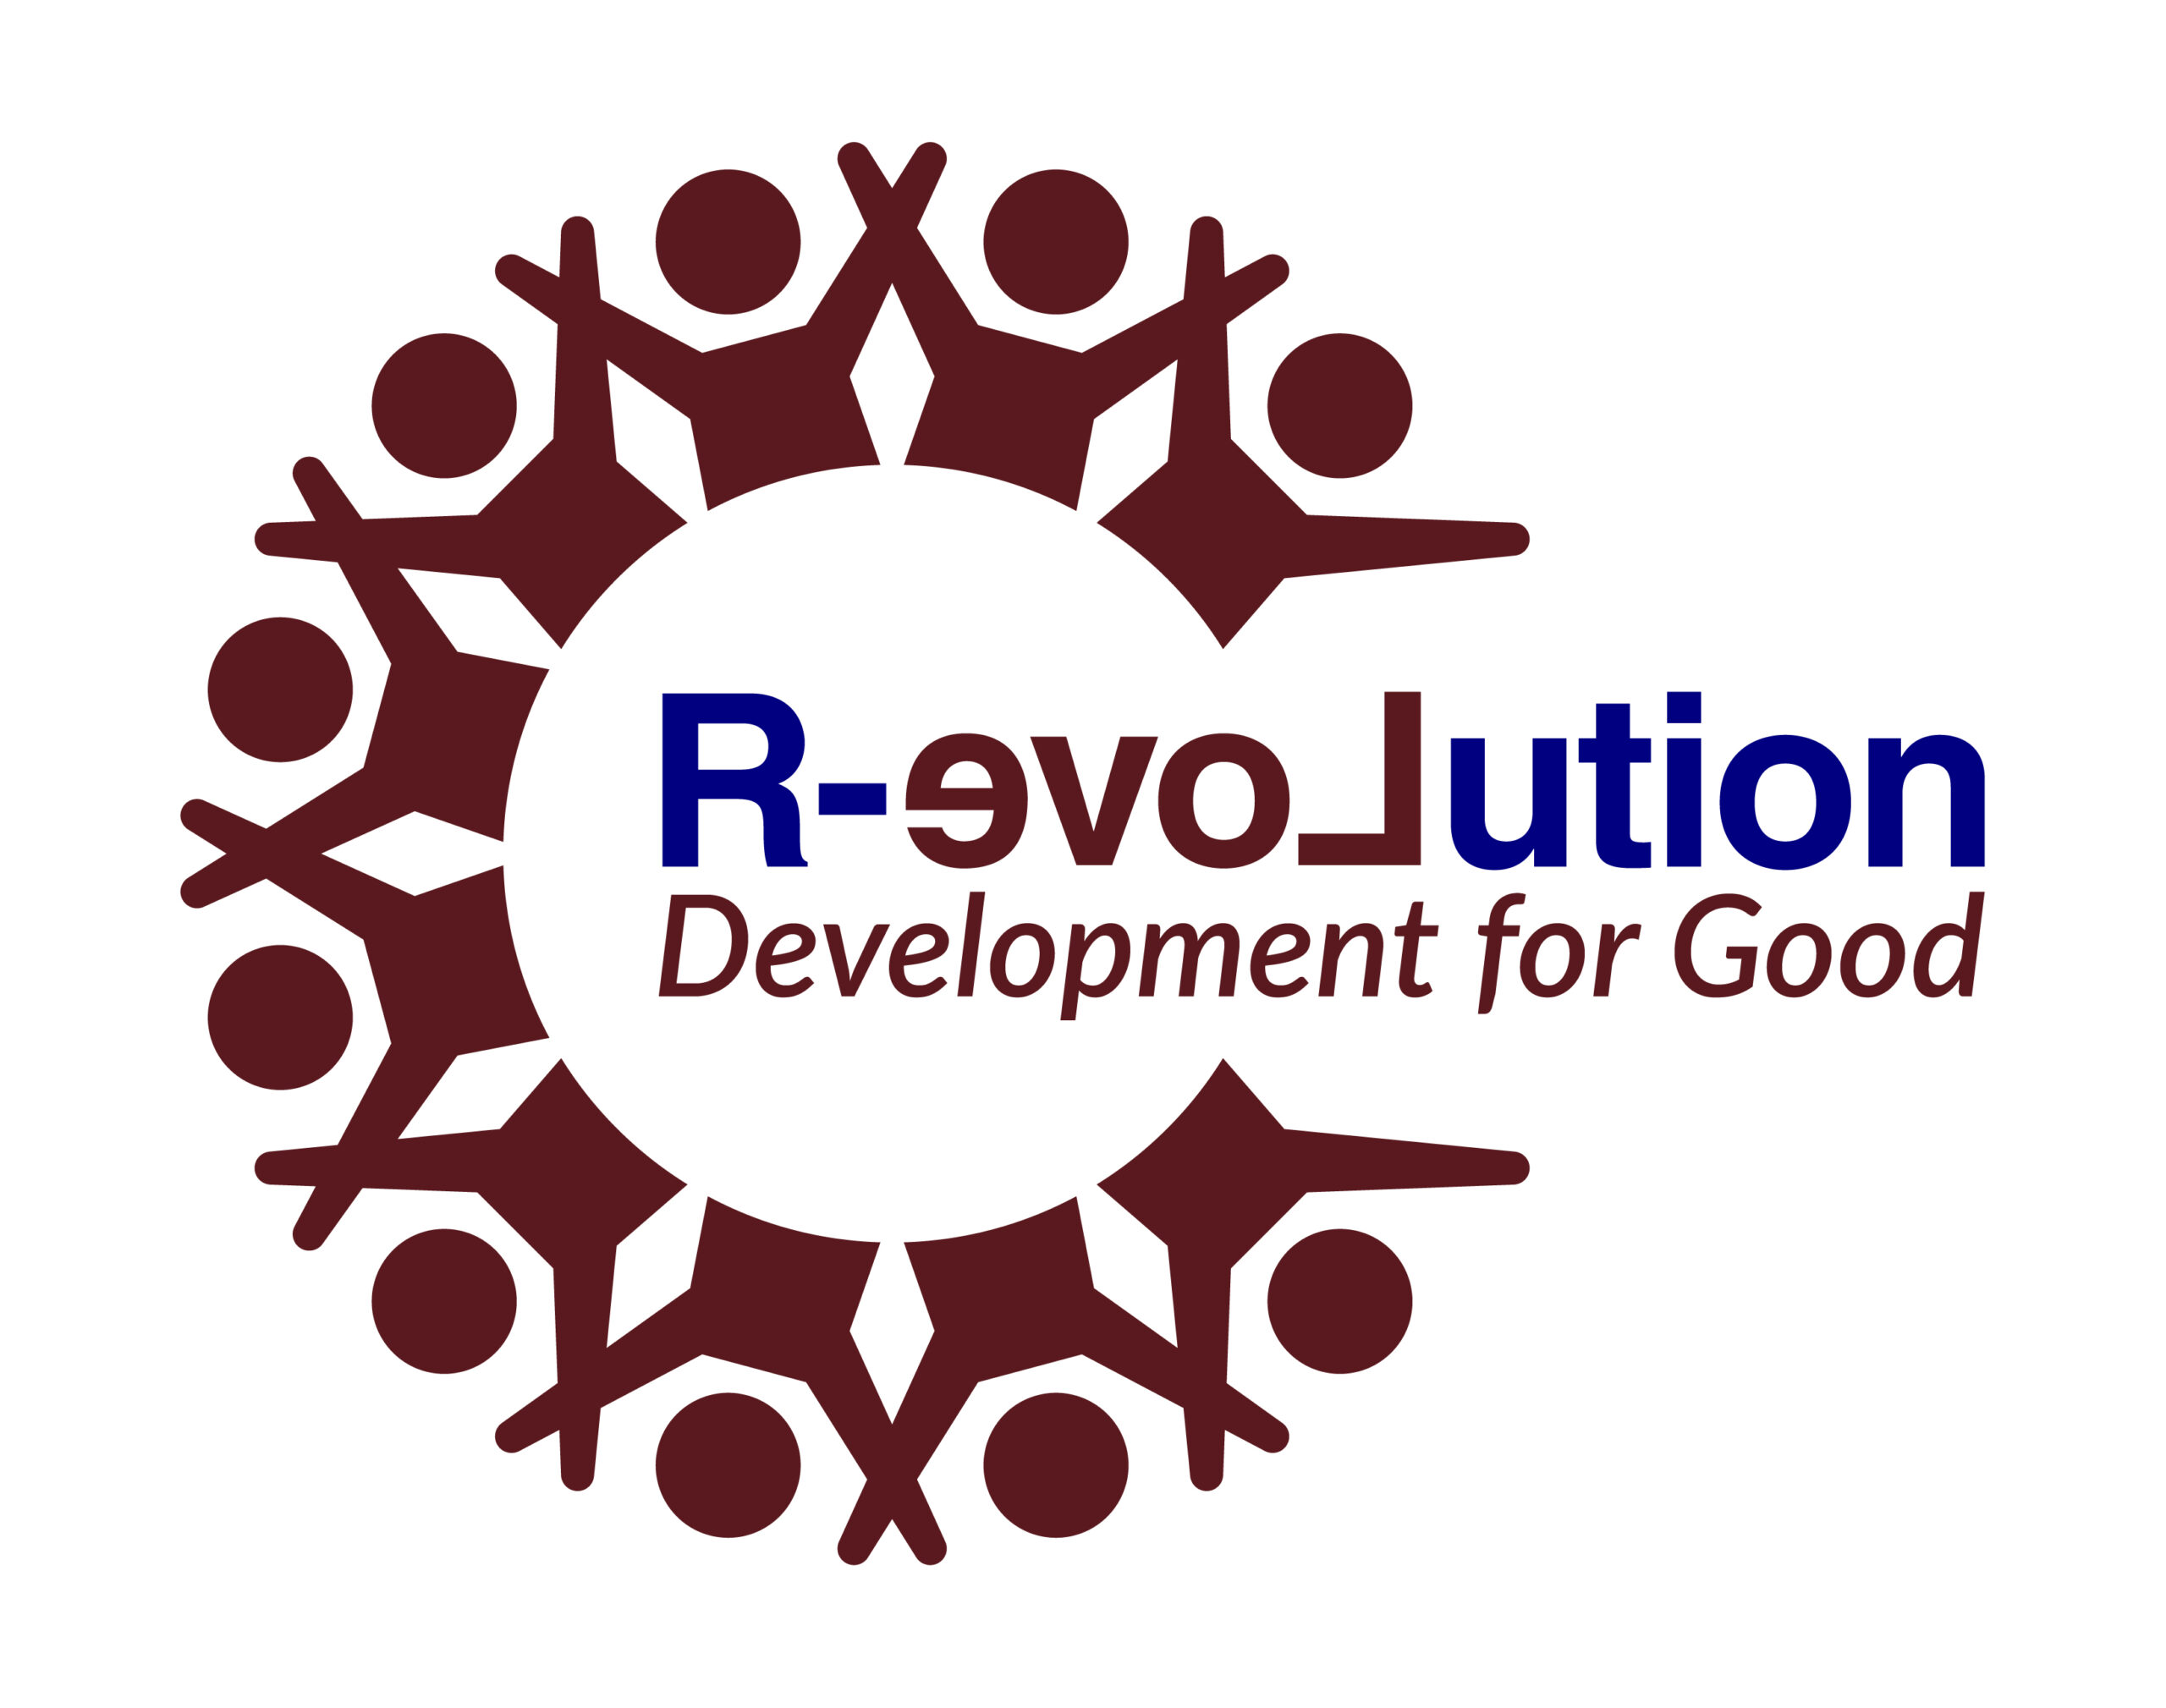 Revolution for Good